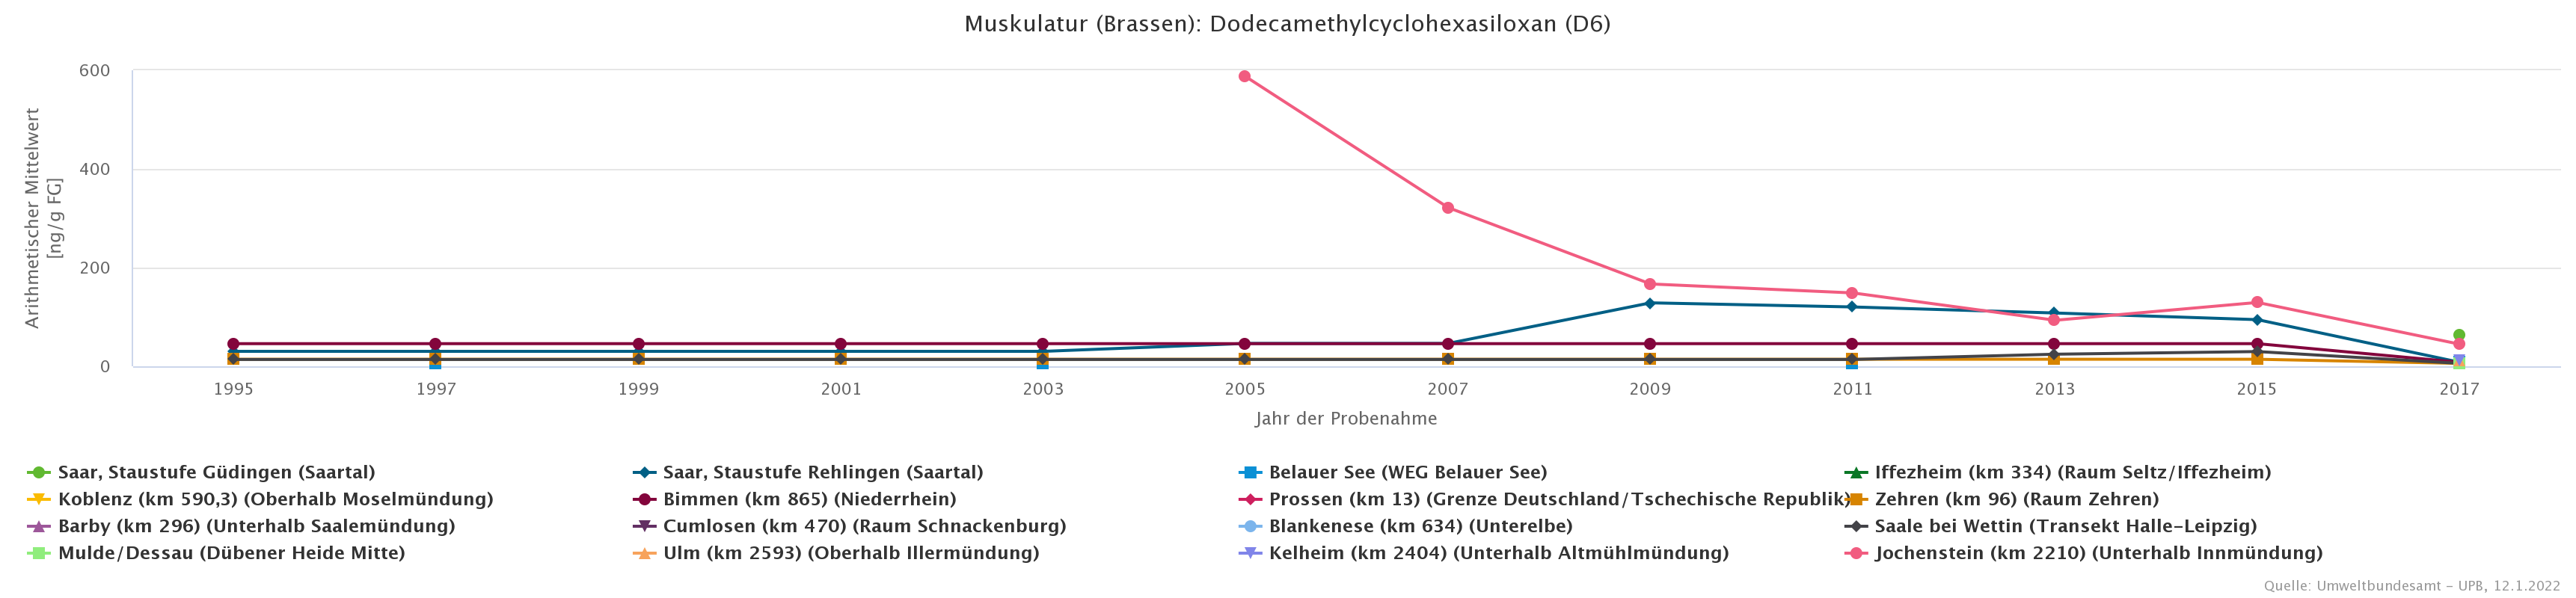 Besonders auffällig hohe Konzentration von Dodecamethylcyclohexasiloxan an der Donau-Probenahmefläche Jochenstein in 2005.